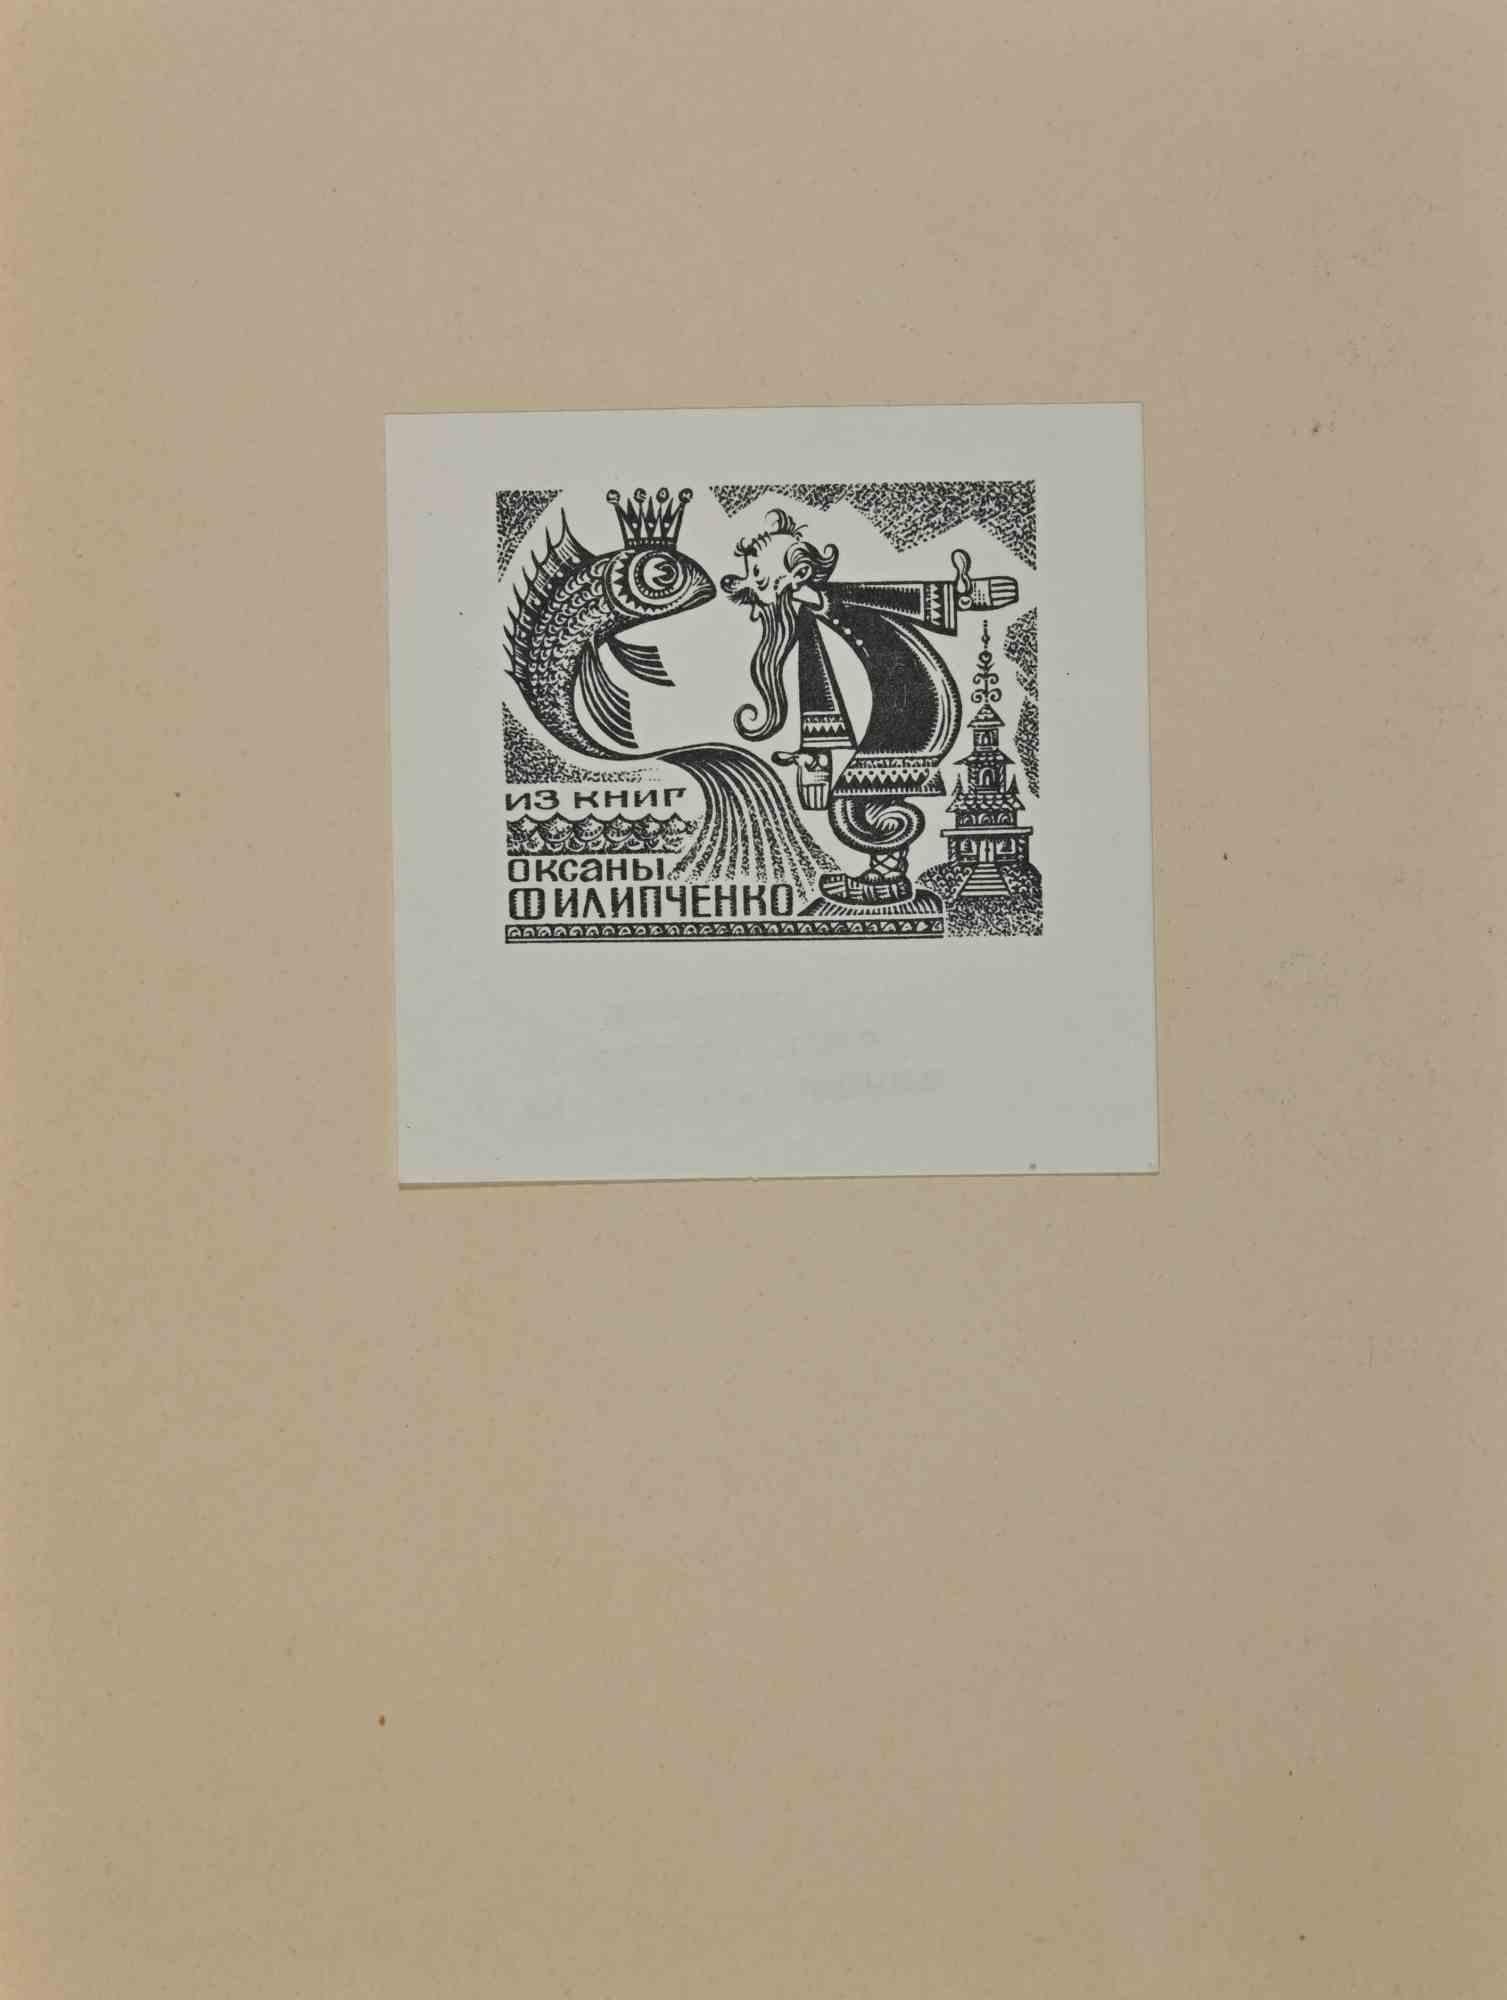  Ex Libris - Woodcut - Mid 20th Century